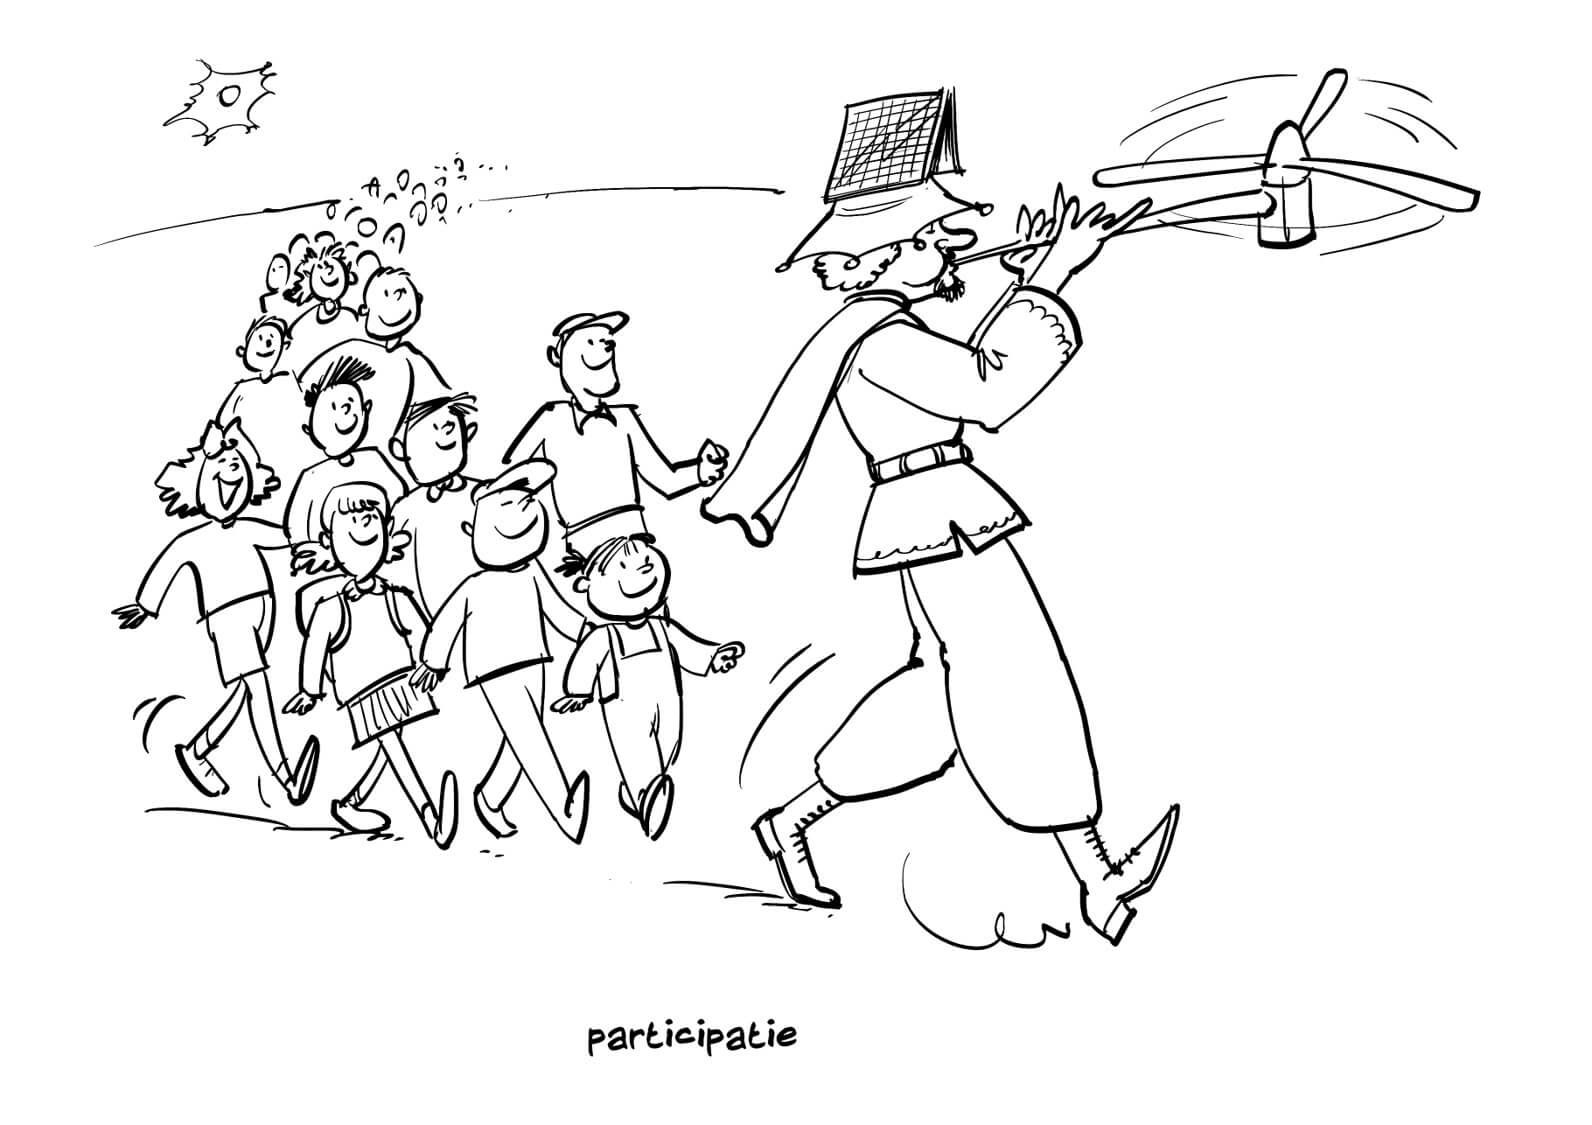 Titel: participatie. Afgebeeld: Groep personen volgt huppelend een persoon met een windmolen als fluit en een zonnepaneel als hoed.